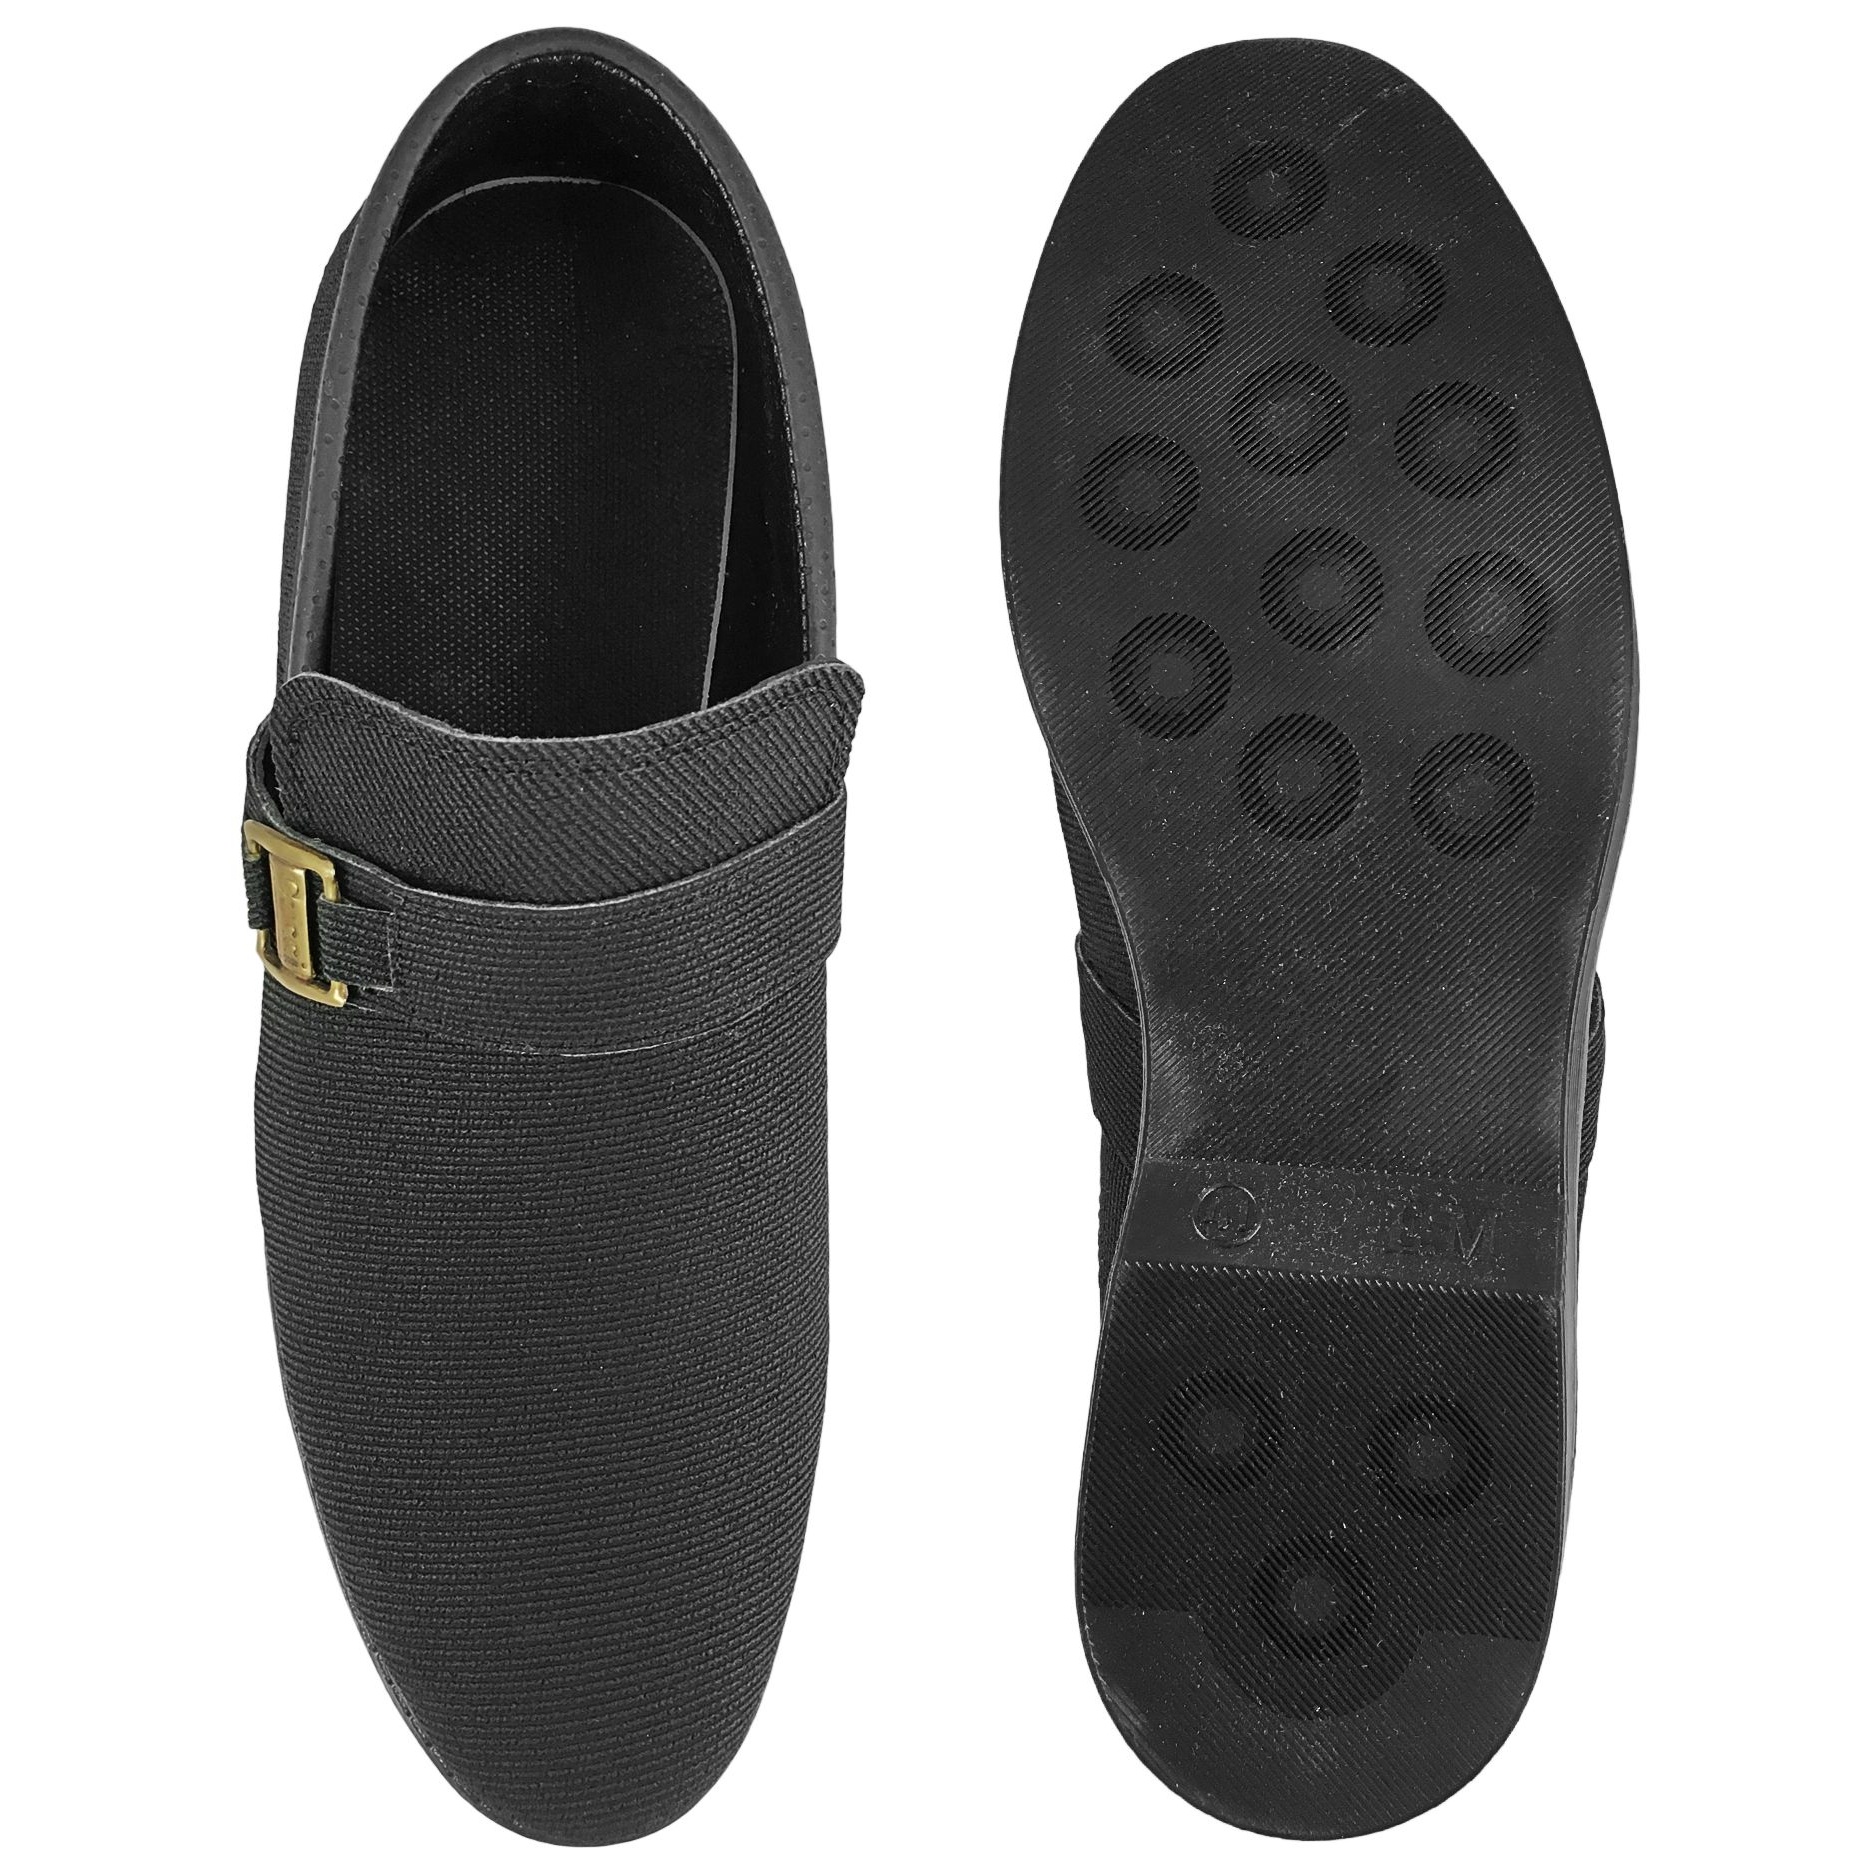  کفش مردانه مدل امید کد B5189